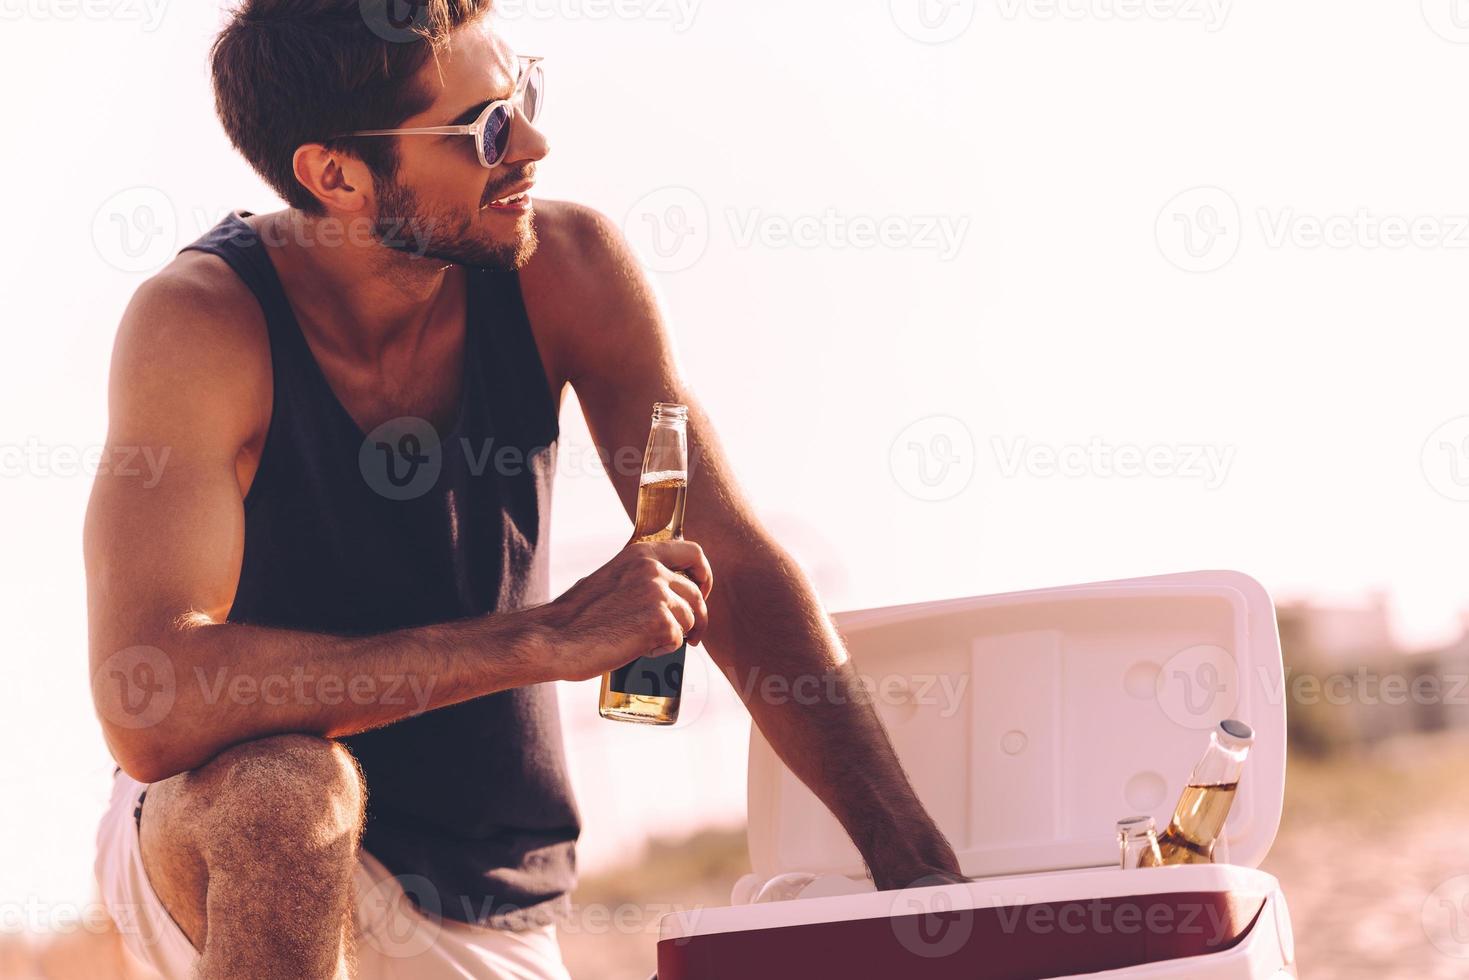 hora da cerveja. jovem bonito tomando garrafas de cerveja do refrigerador enquanto relaxa na praia foto